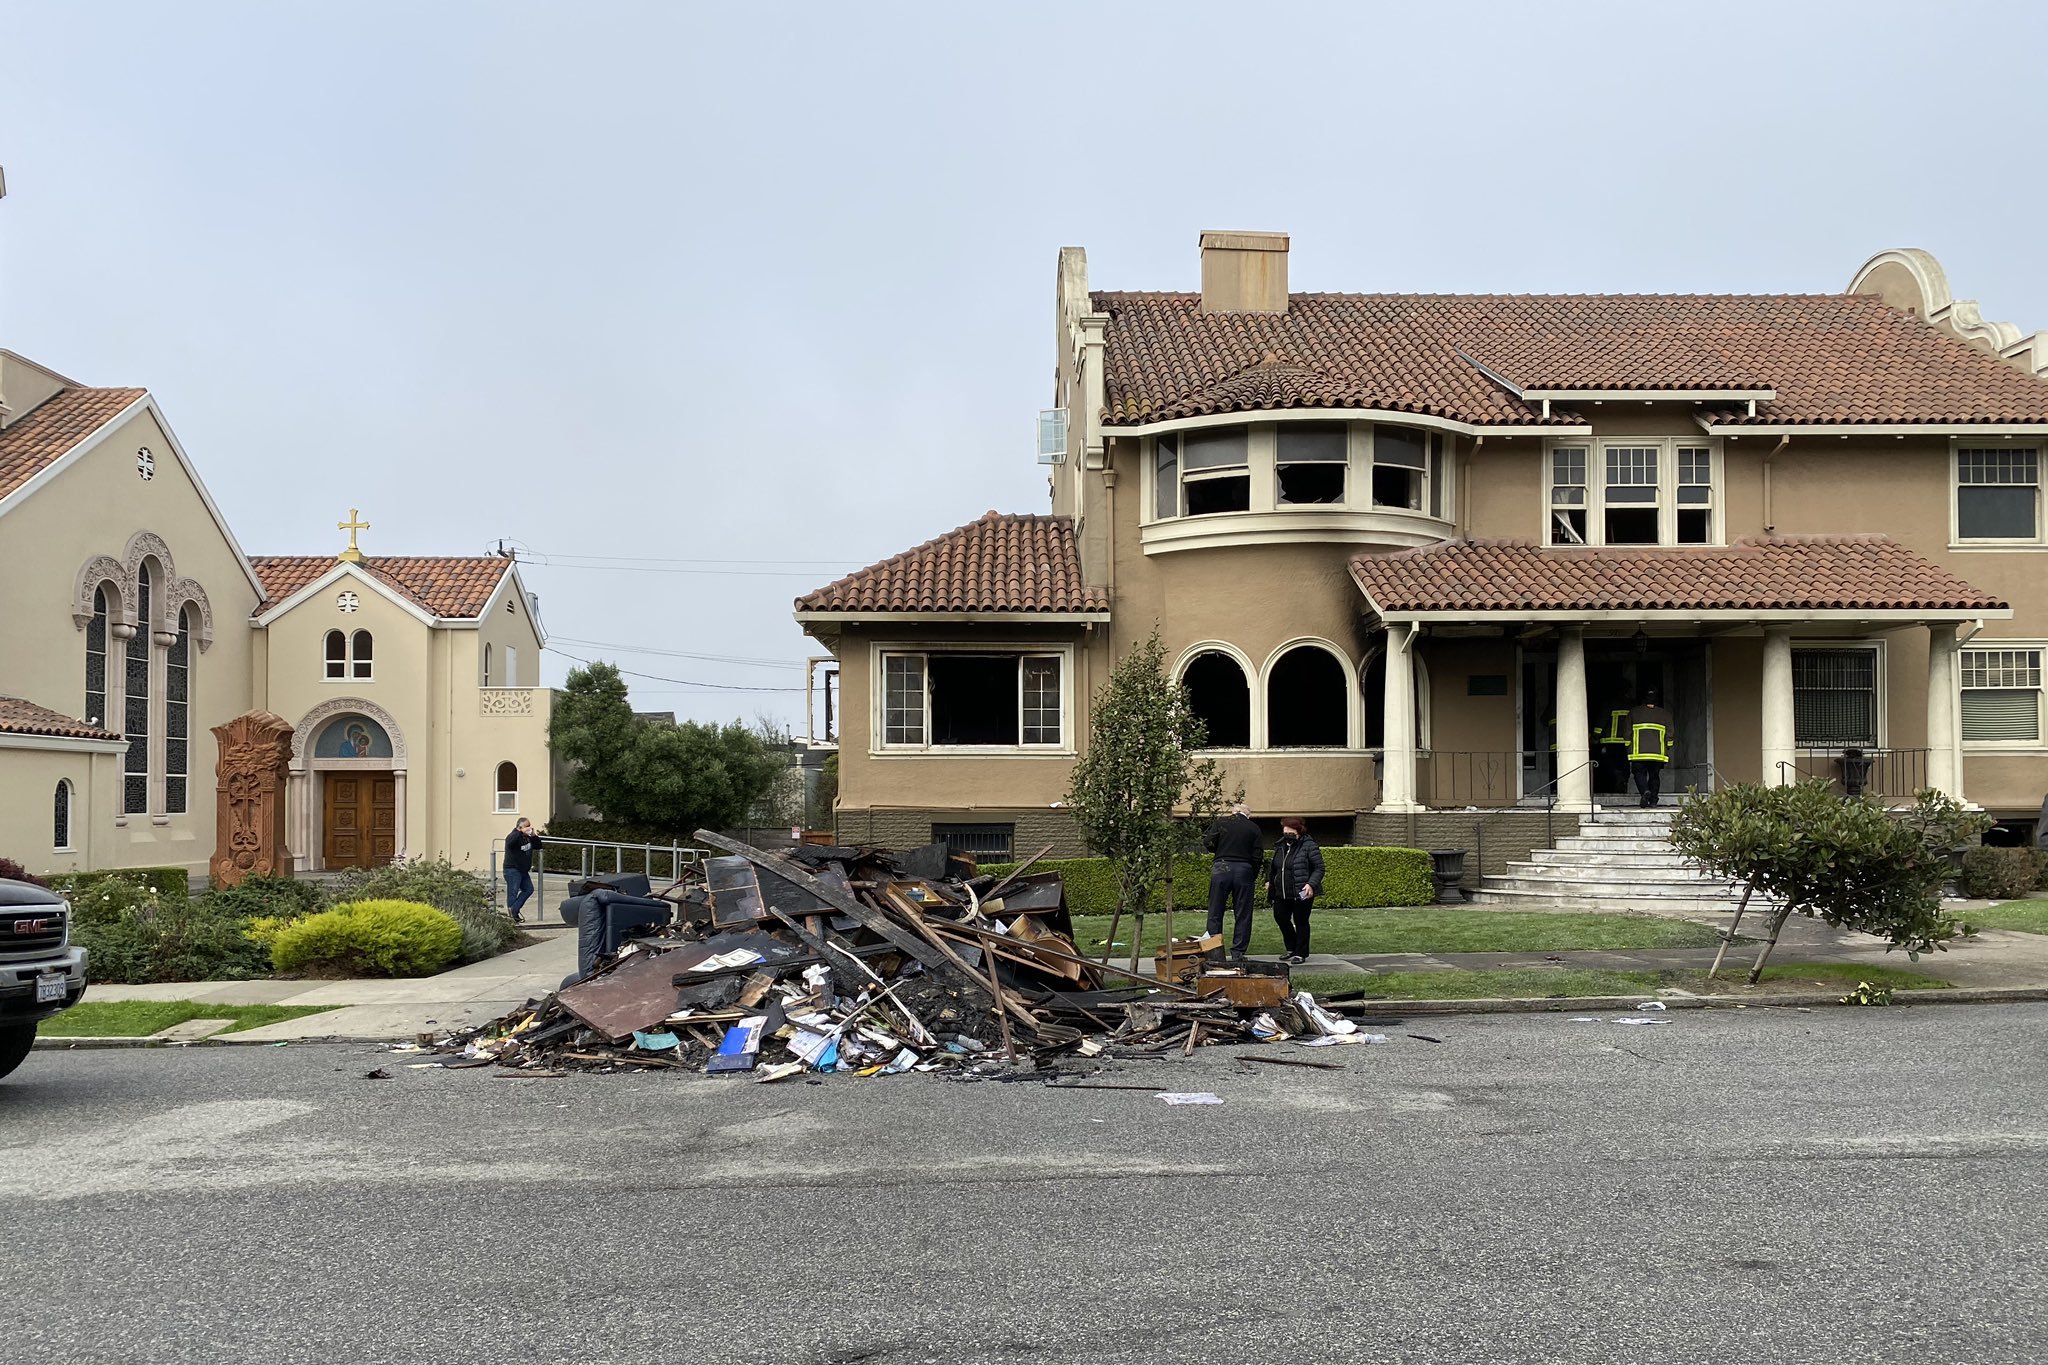 Губернатор Калифорнии Гэвин Ньюсом сделал запись о нападении на армянский центр Сан-Франциско